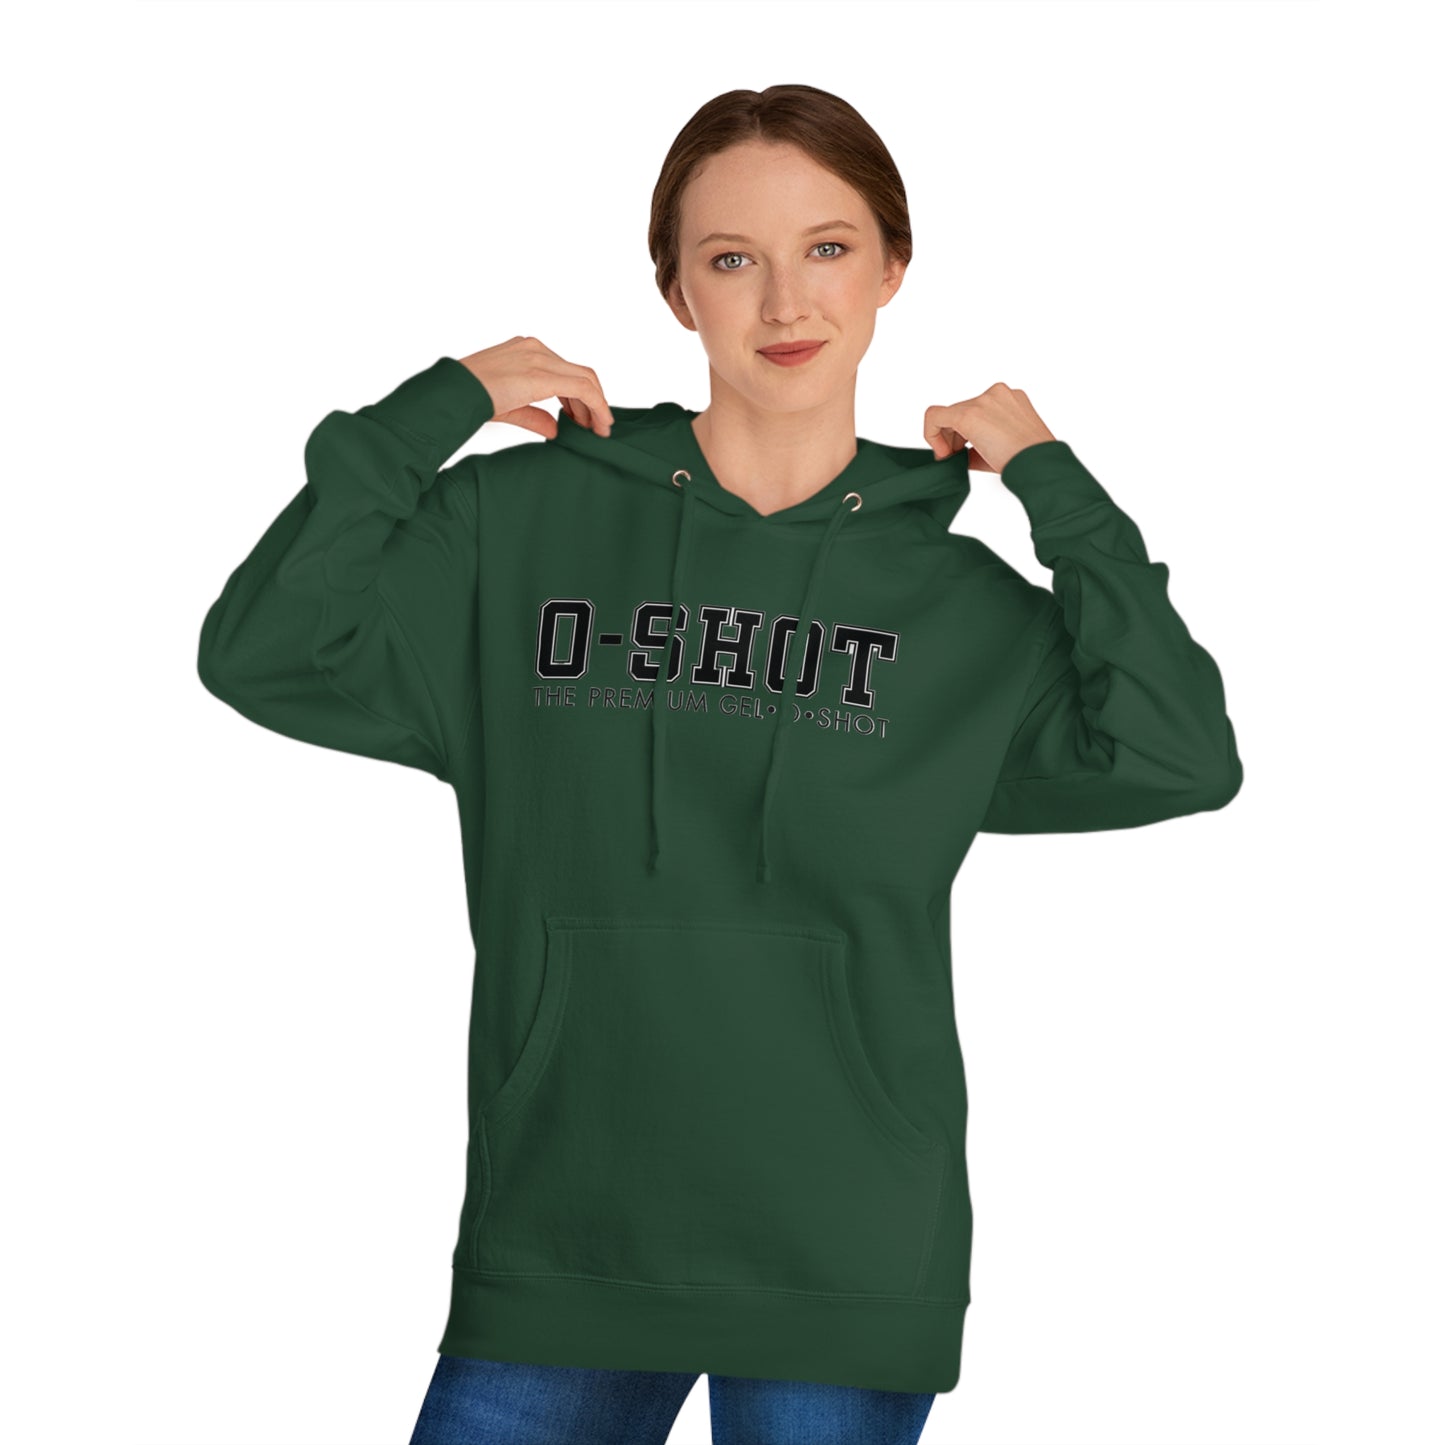 College O-SHOT Unisex Hooded Sweatshirt